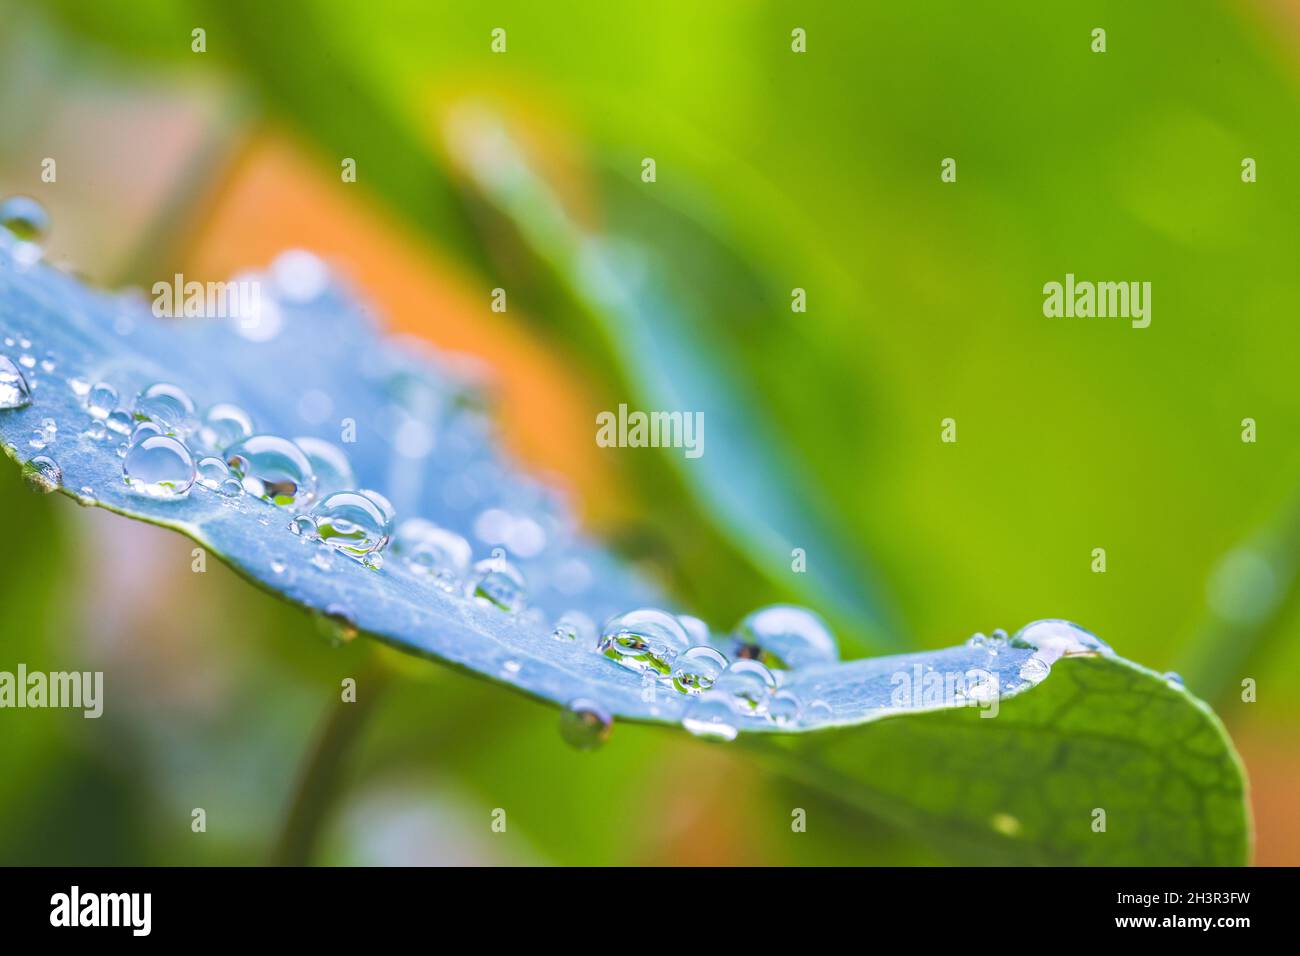 Umwelt, Frische und Naturkonzept: Makro von großen Wassertropfen auf grünem Blatt nach Regen. Wunderschöne Blattstruktur. Stockfoto